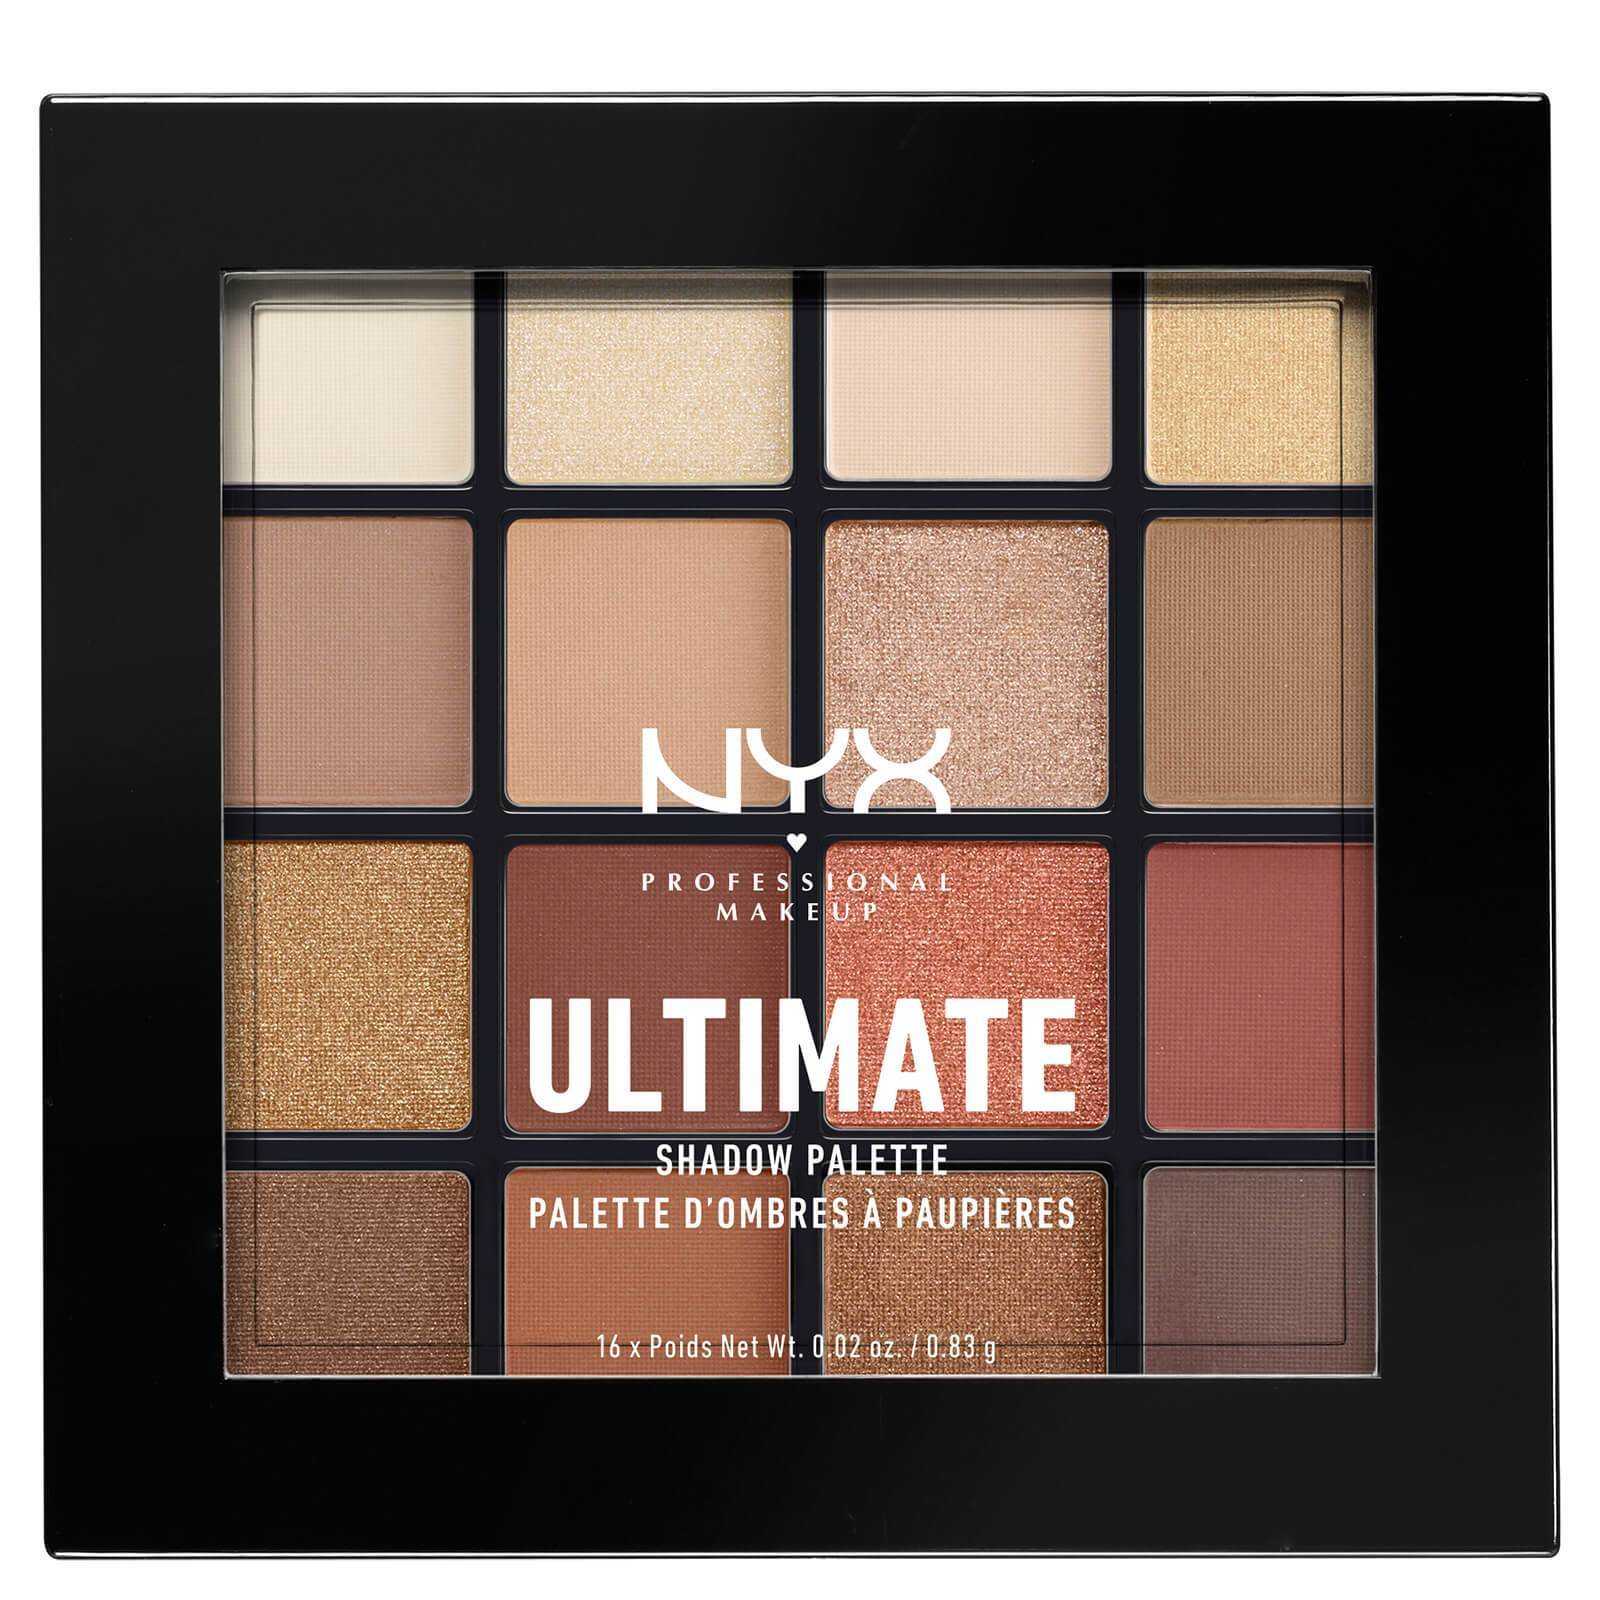 NYX - Palette d’ombres ultimates de maquillage professionnel - Neutres chauds - 83g - NYX - Ethni Beauty Market